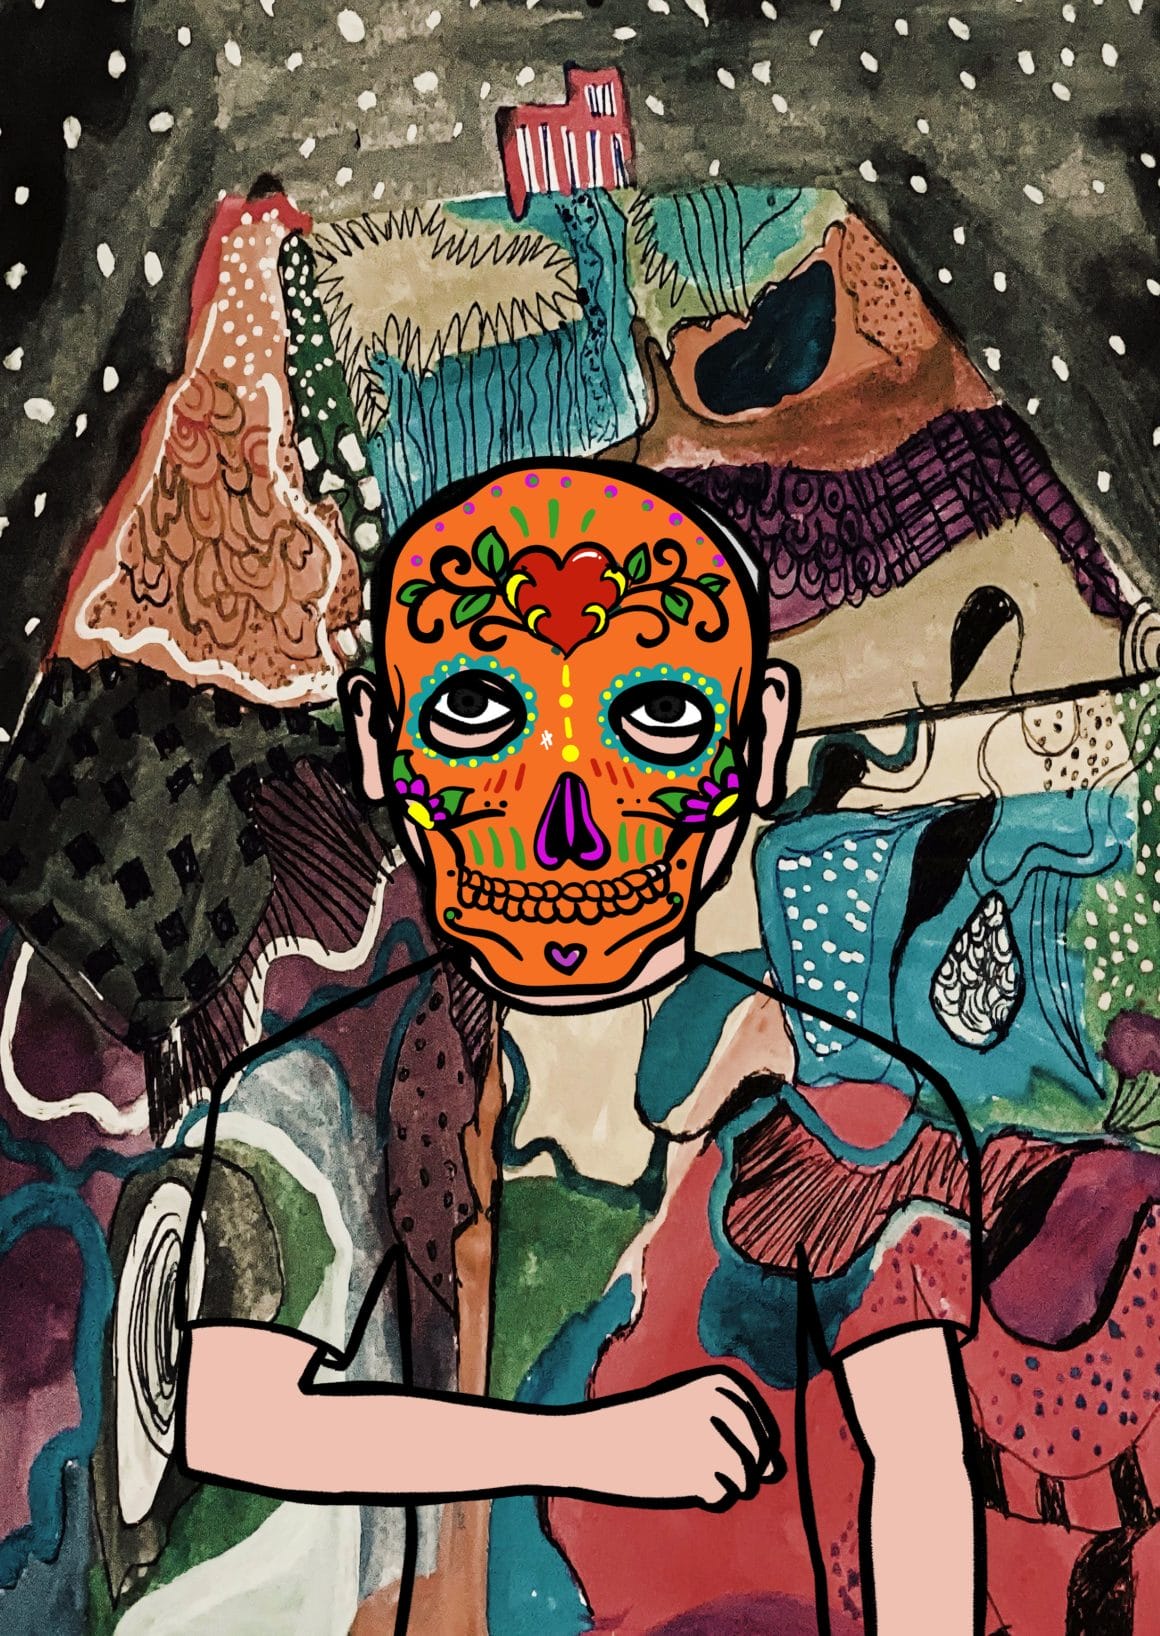 Fond très coloré avec des motifs abstraits. Le tee shirt du personnage reprend ces motifs. Masque qui ressemble beaucoup aux masques traditionnels mexicains de la fête des morts.